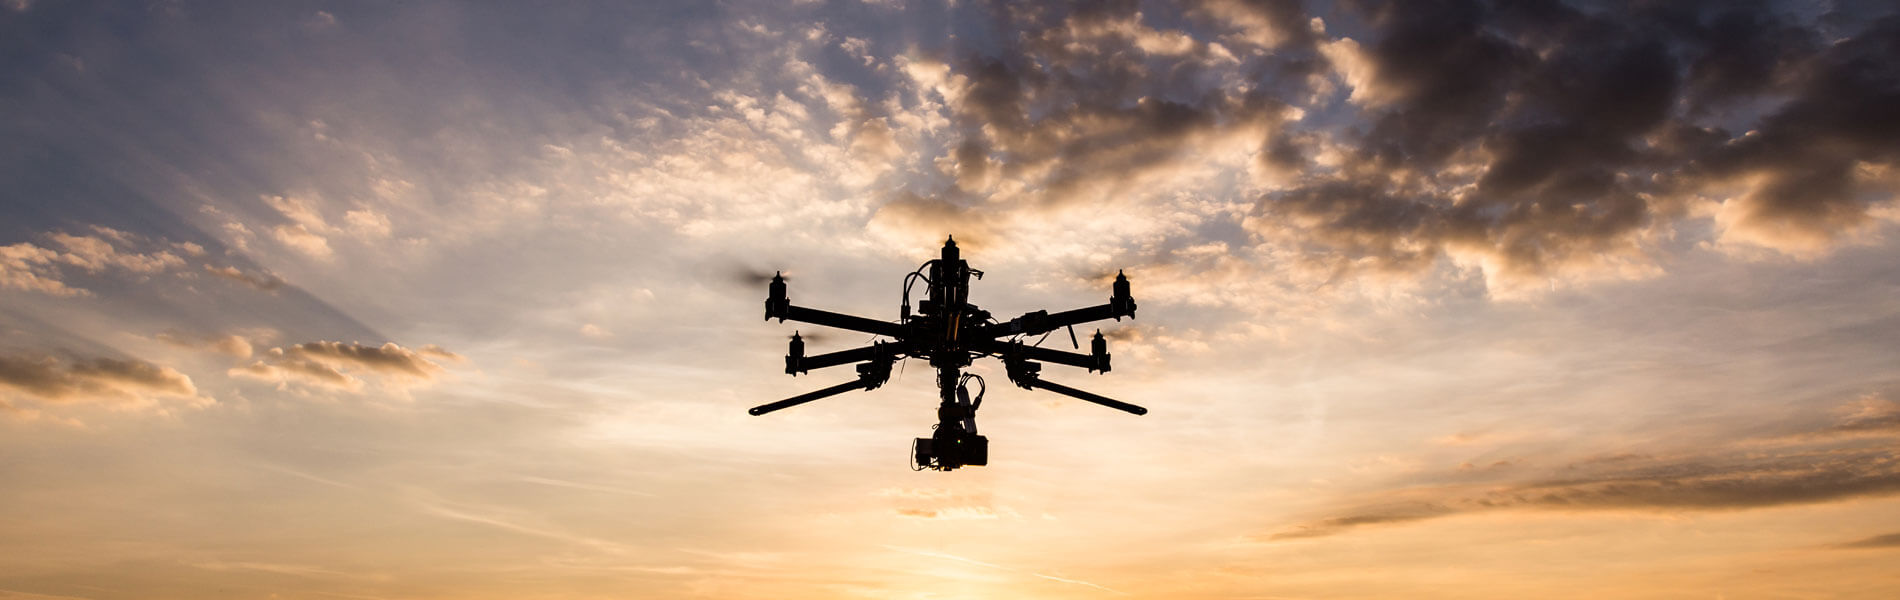 Drohnenlieferung: US-Supermarktkette beliefert erste Kunden regelmäßig